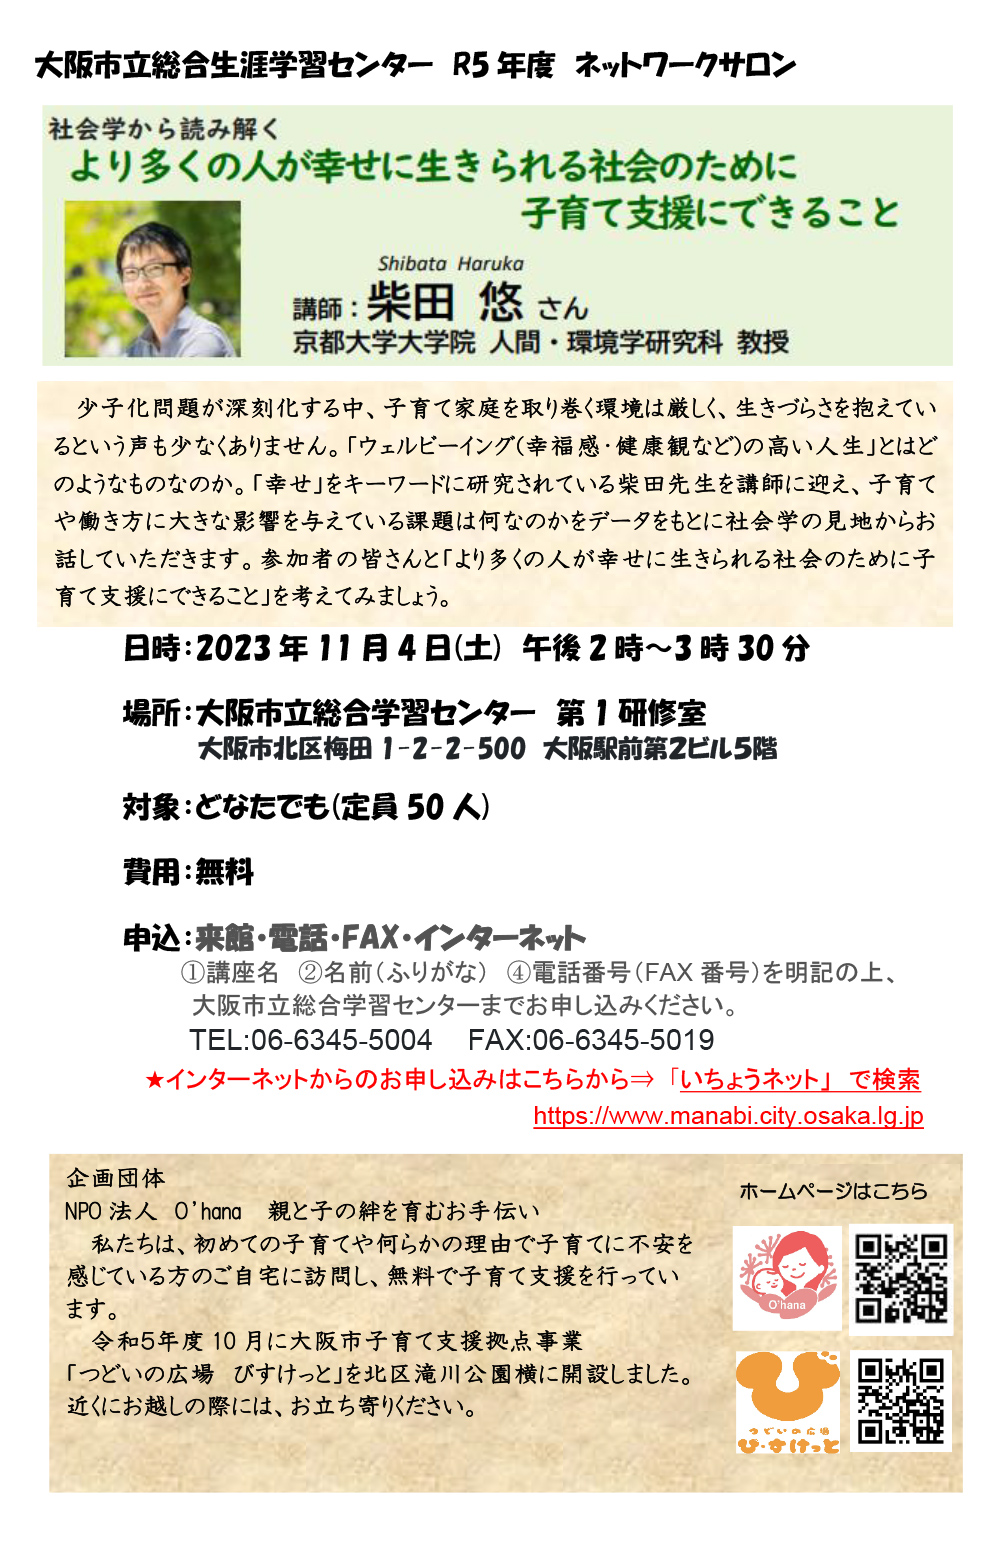 参加無料【大阪】「子育て支援」セミナー開催します。